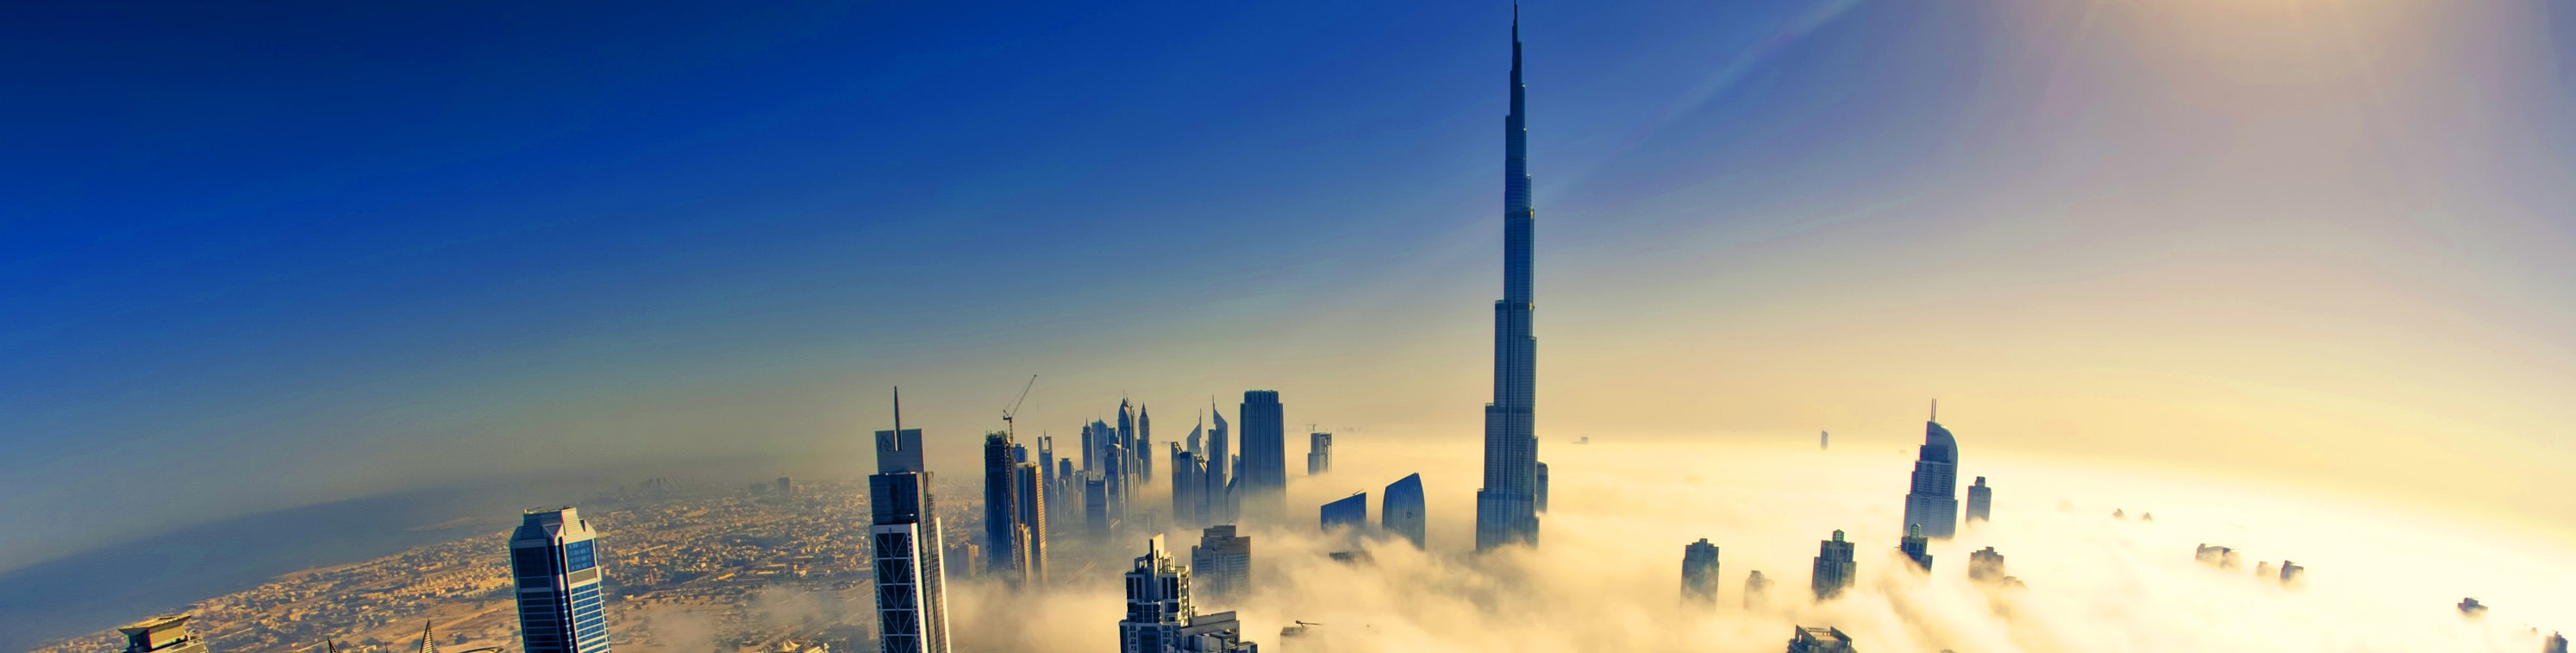 Dubaj - nejvyšší budova světa Burj Khalifa